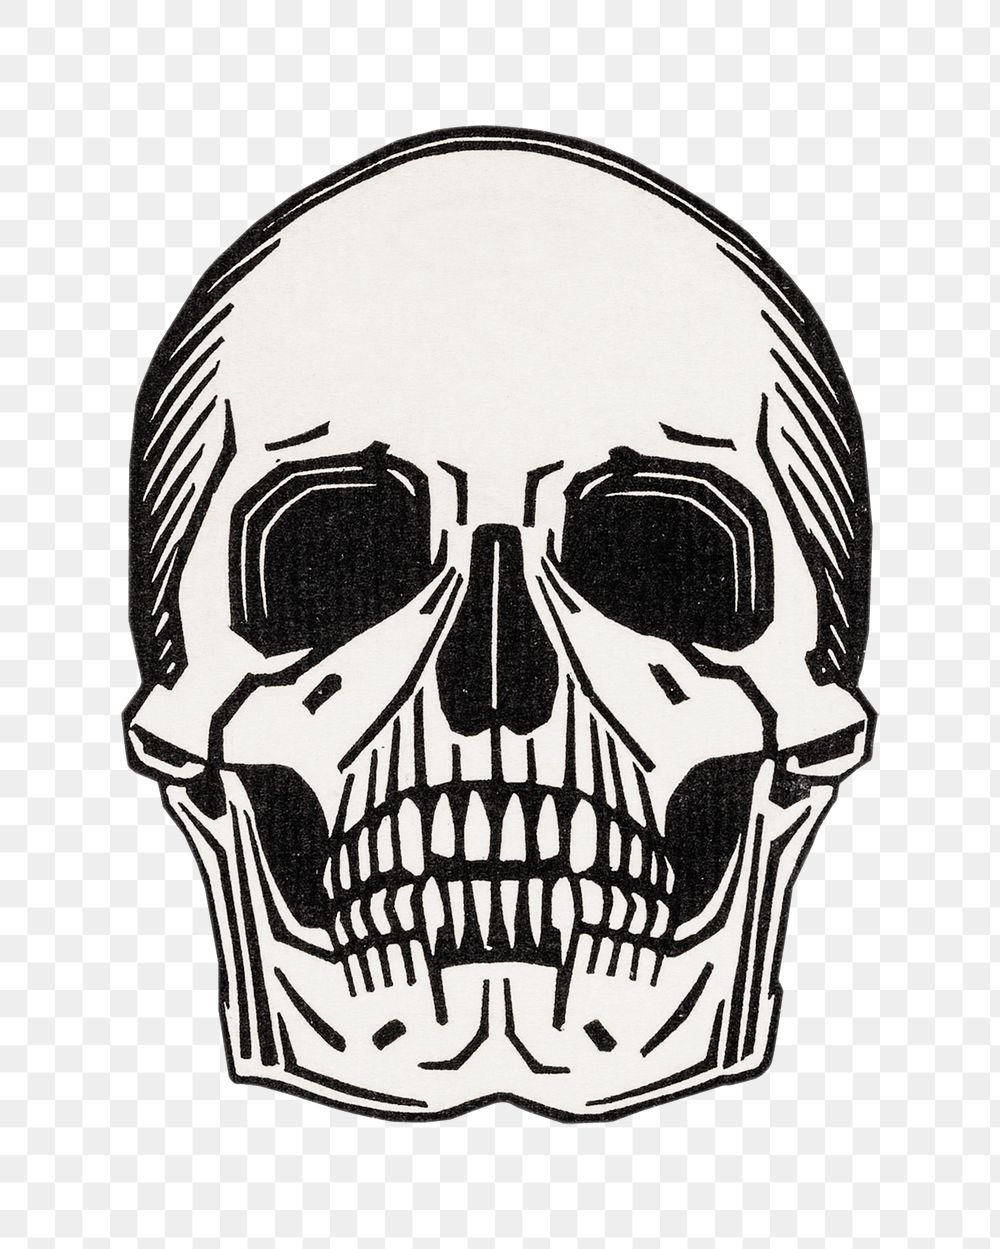 Png skull line art illustration, transparent background